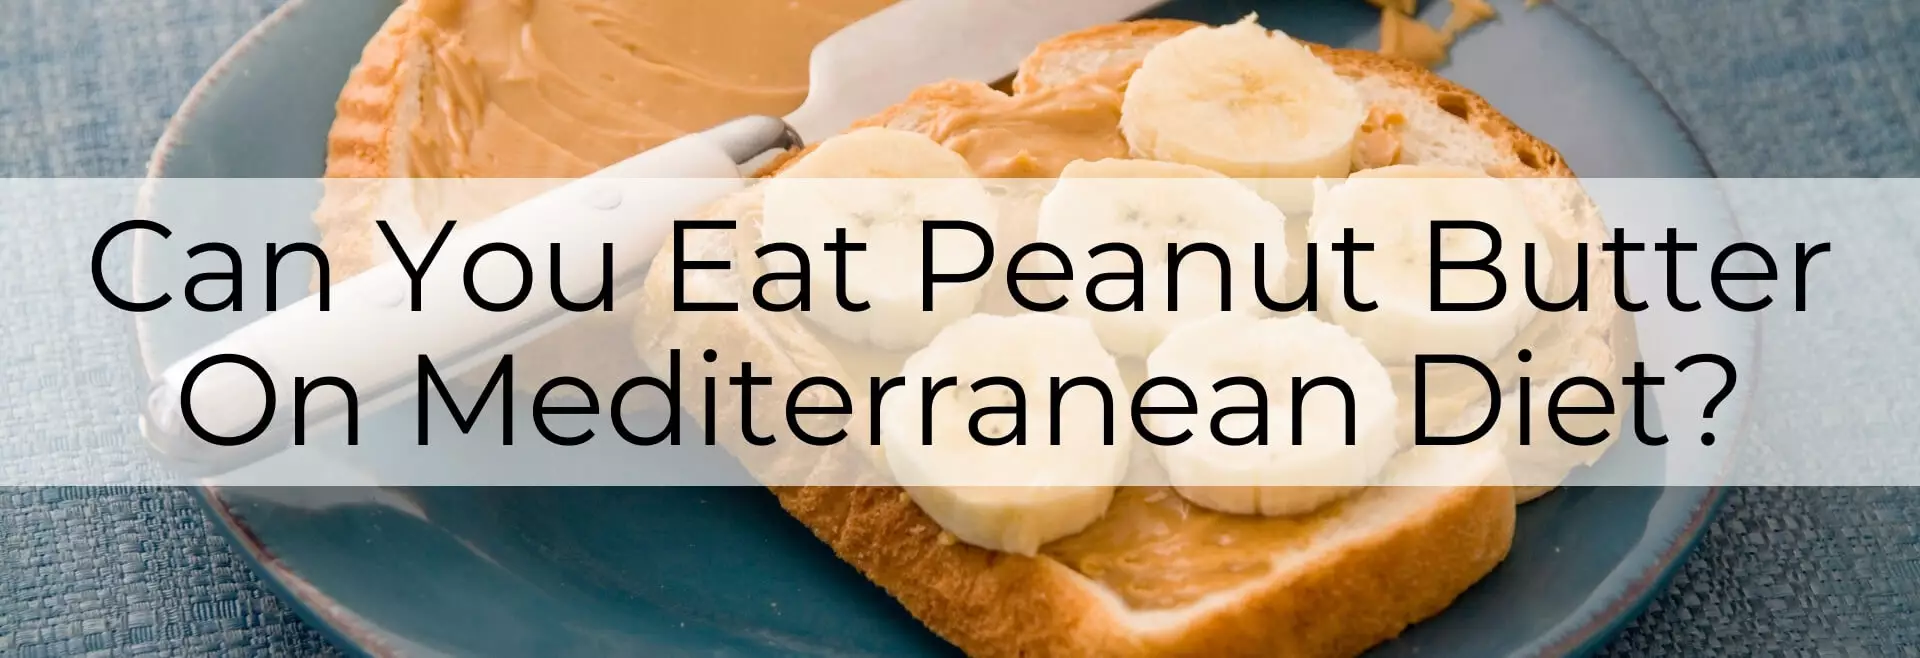 peanut butter on mediterranean diet main-post-image